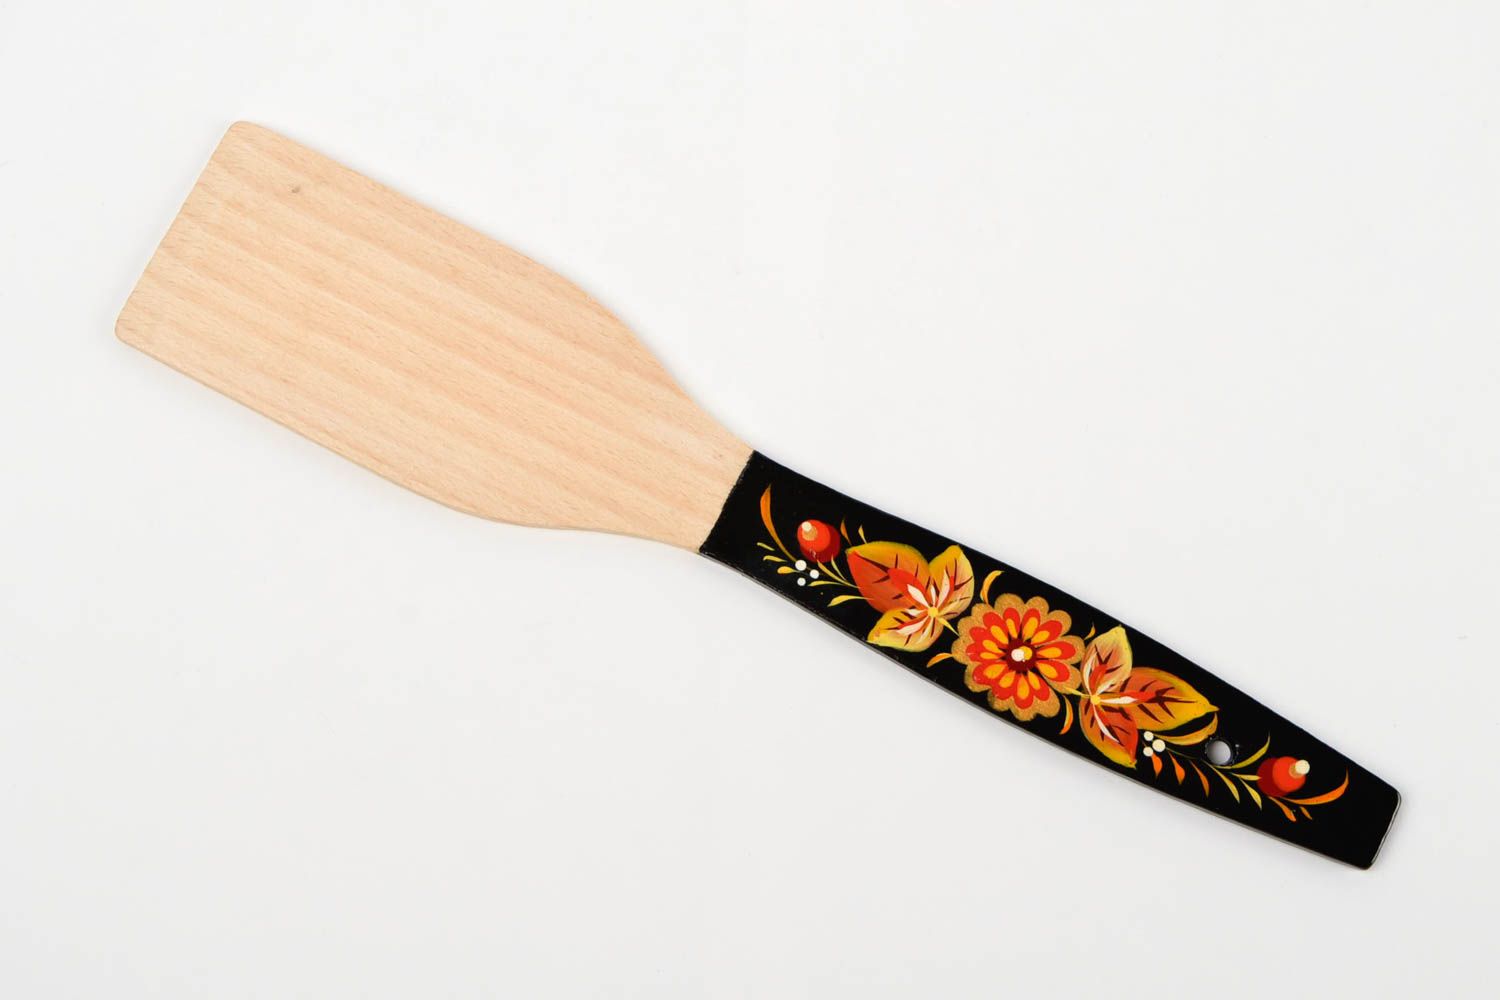 Аксессуар для кухни хэнд мэйд деревянная посуда расписная деревянная лопатка фото 3